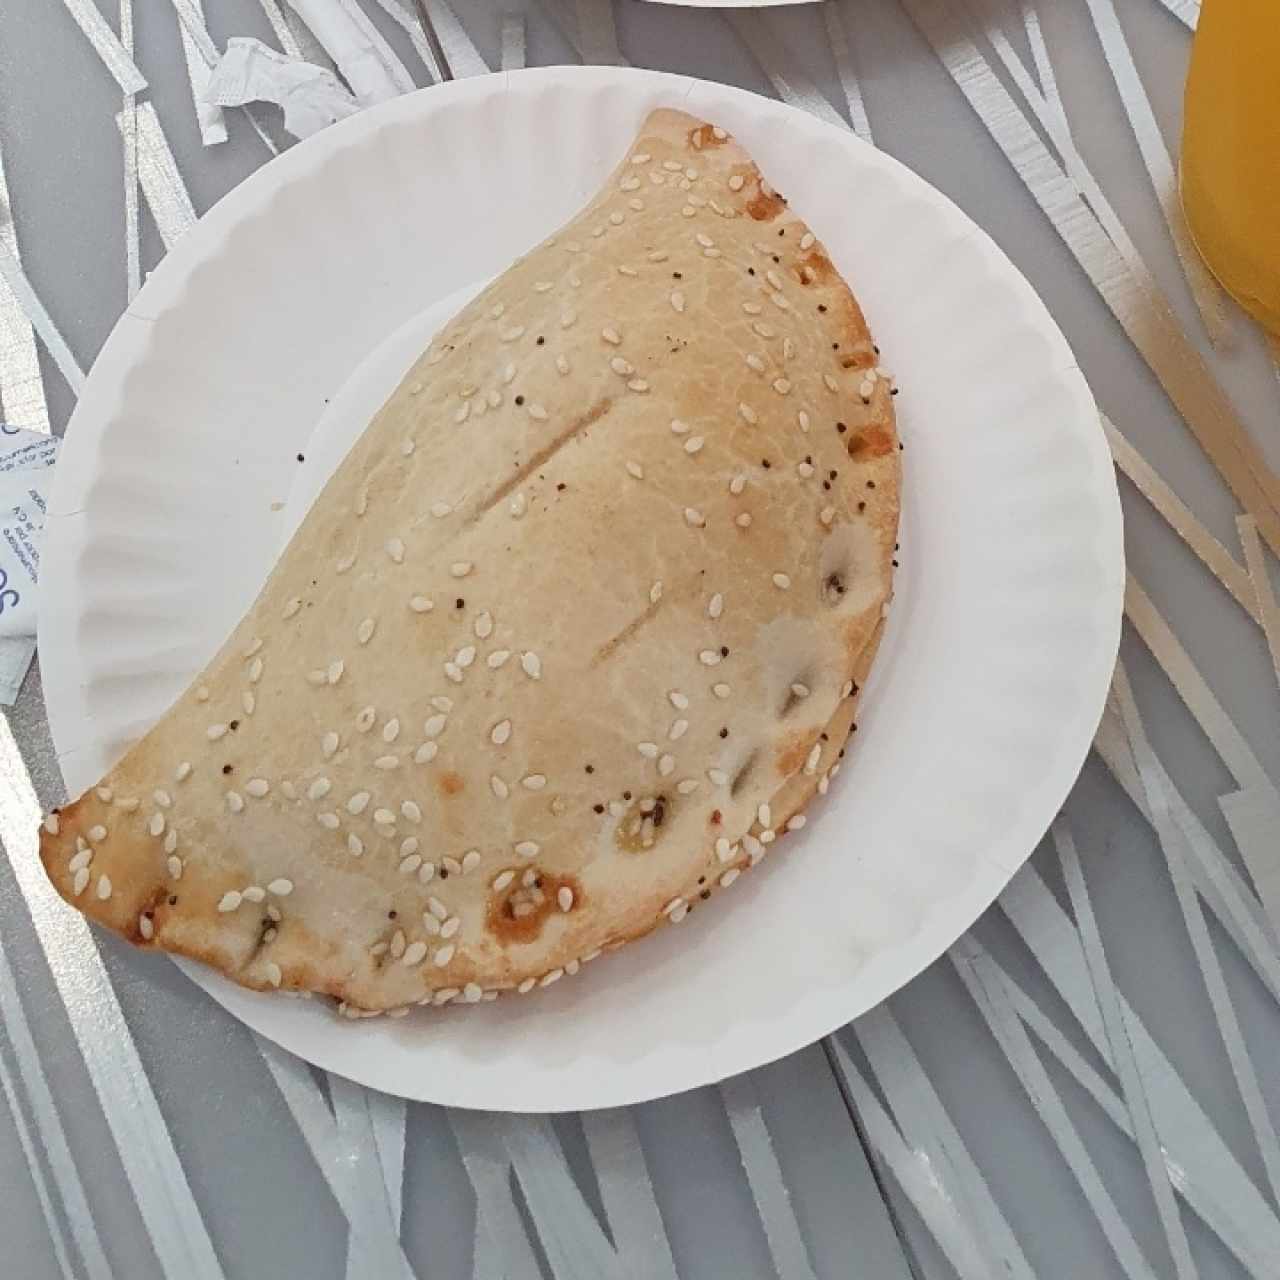 Desayunos - Empanada de queso (panameño)